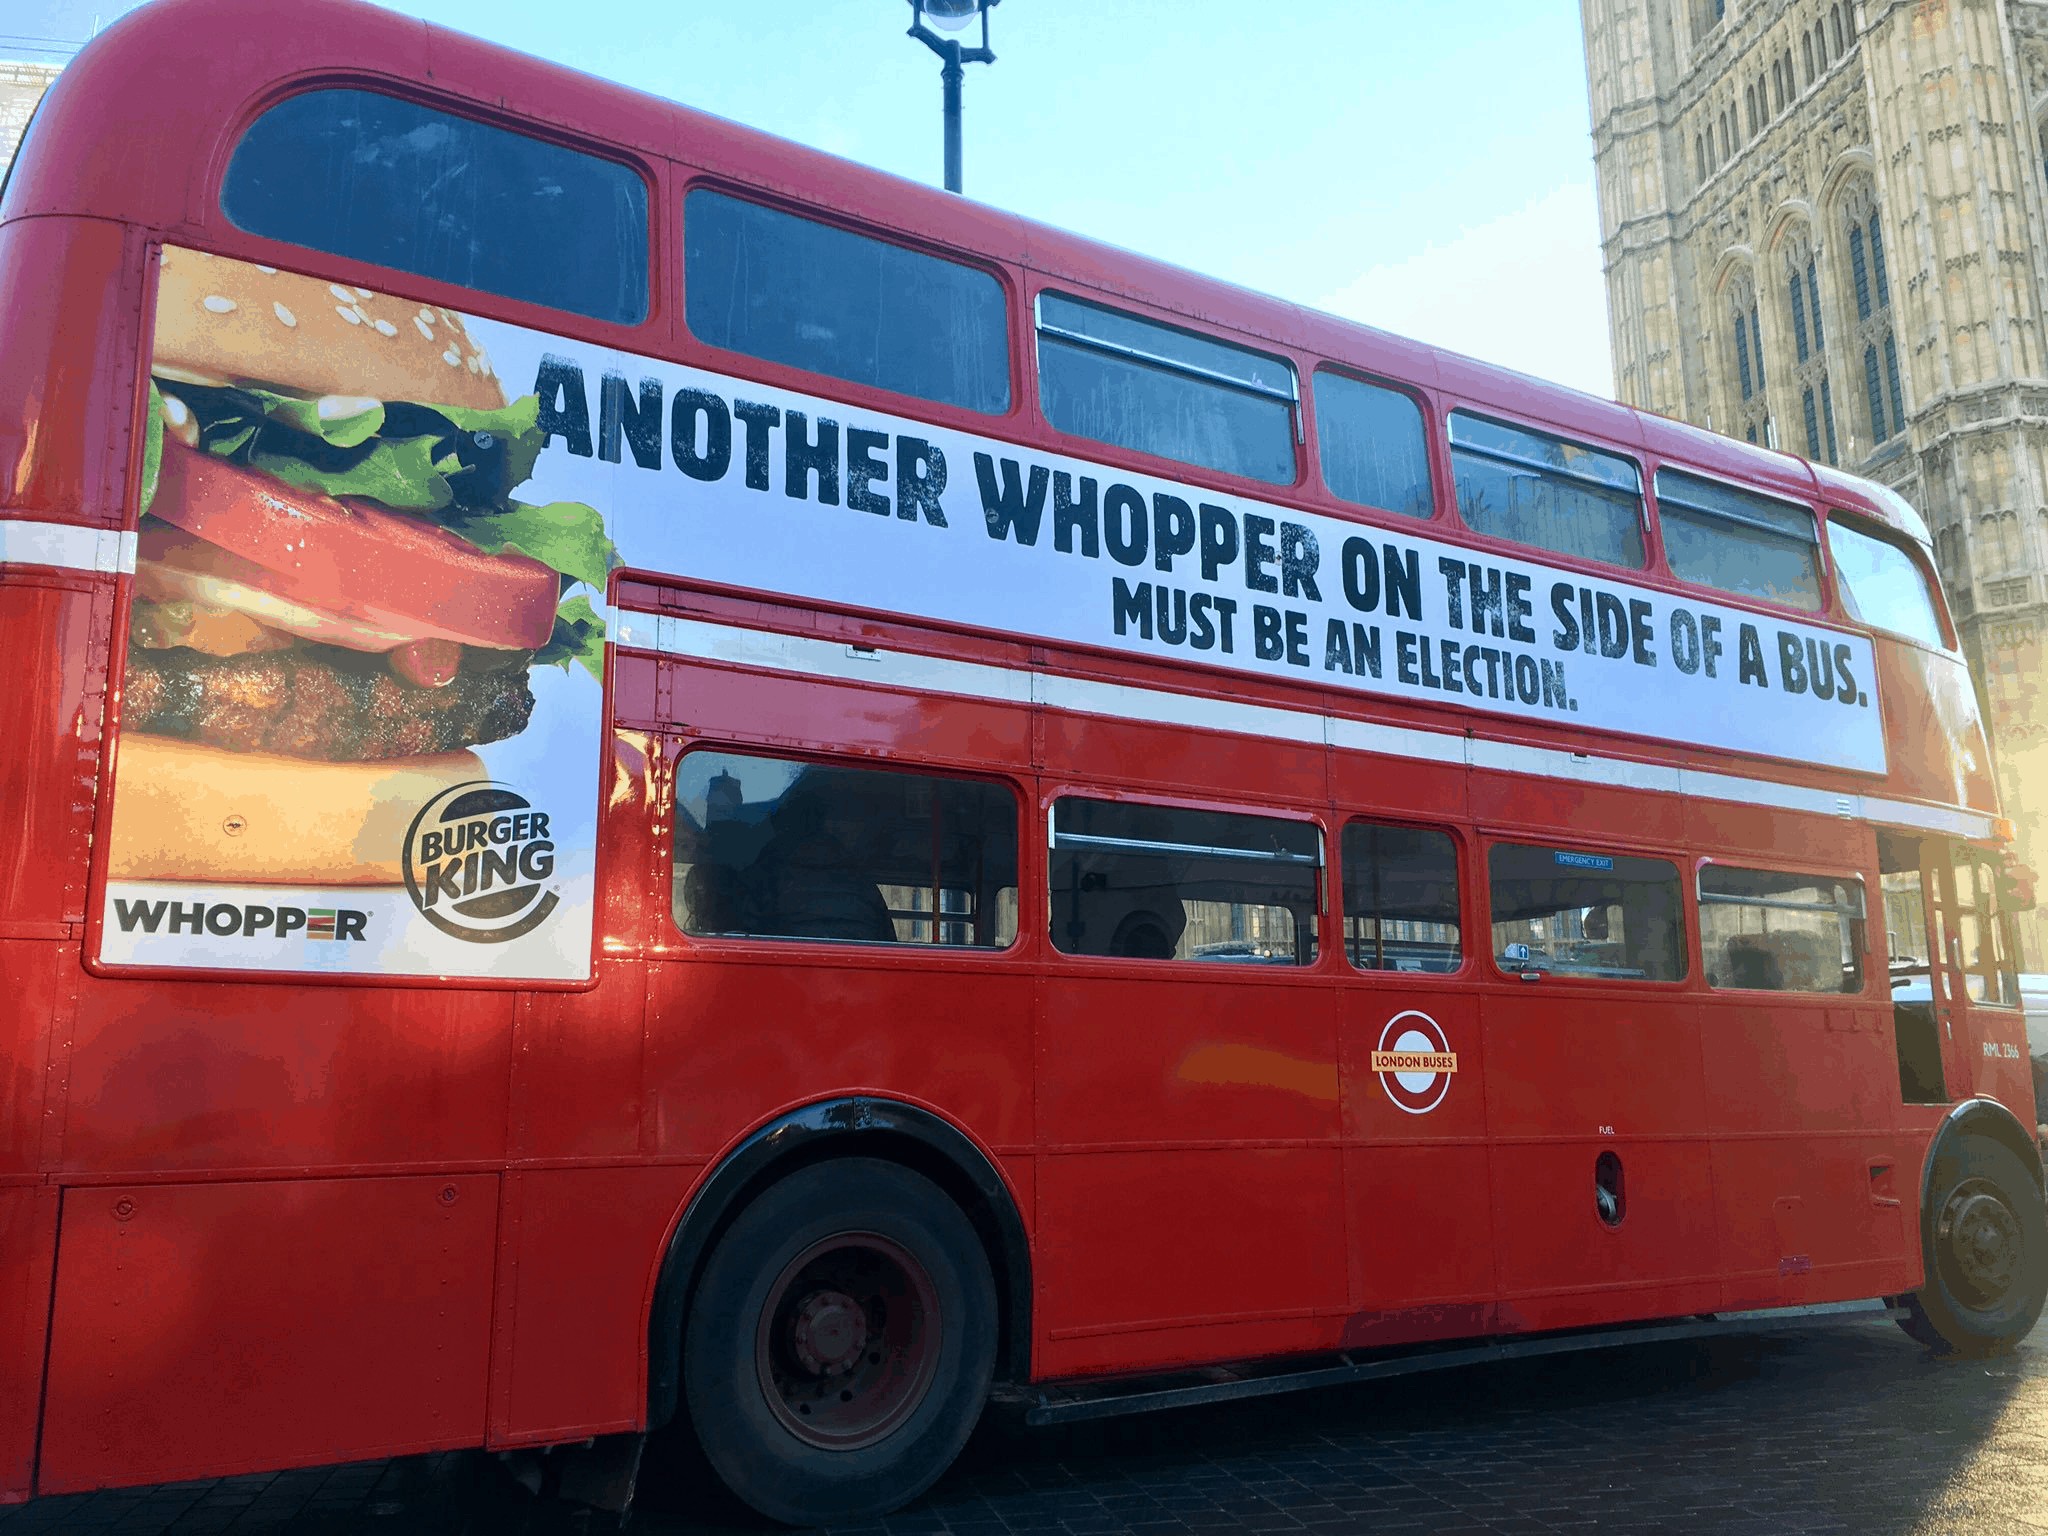 Burger King park “whopper” bus outside Westminster